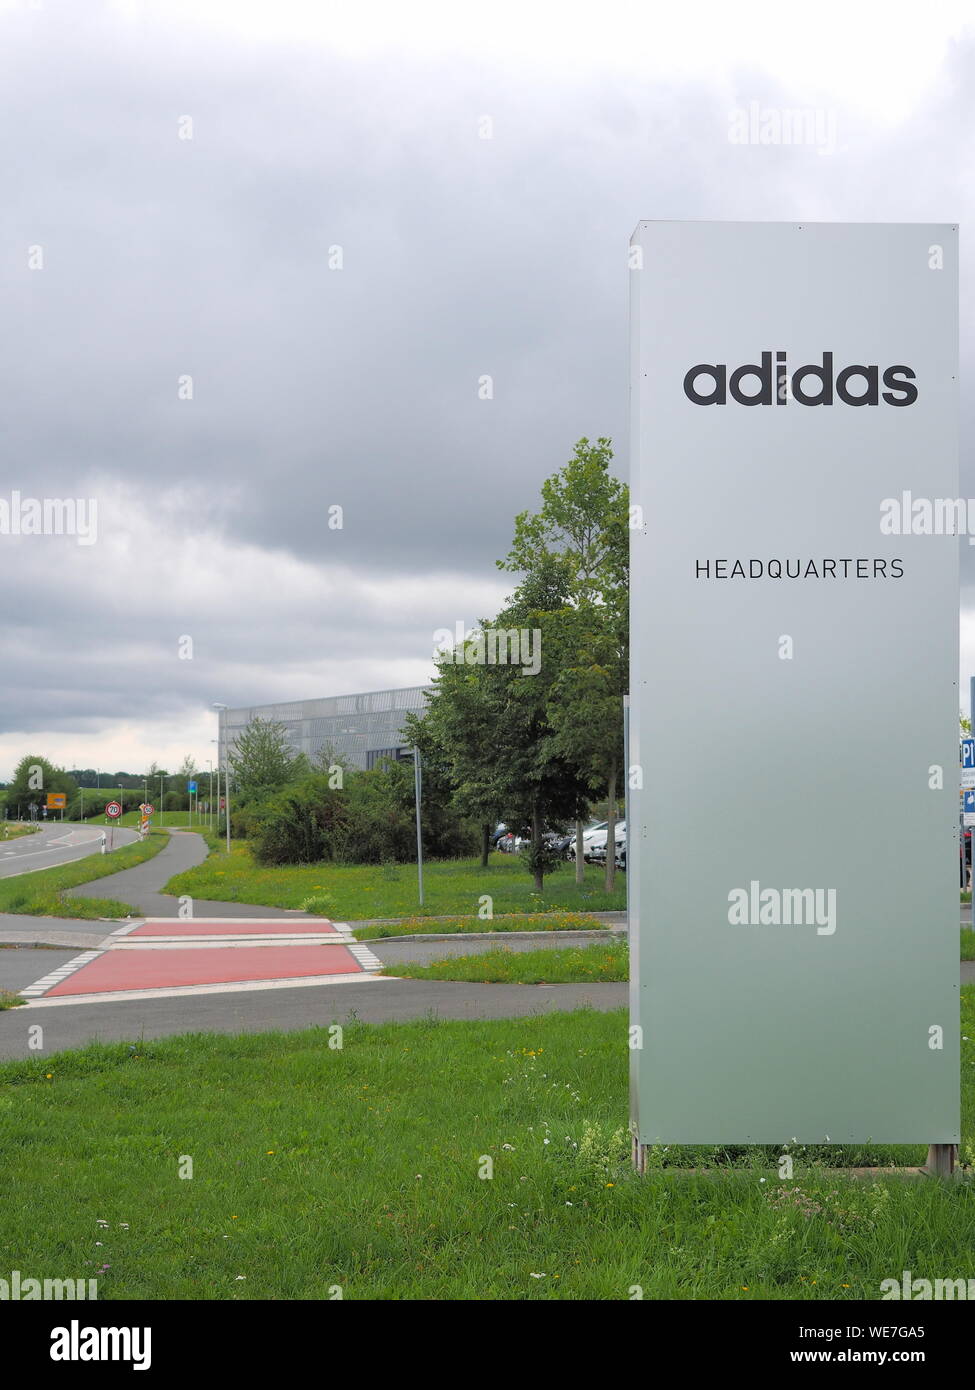 Herzogenaurach, Deutschland - 19 August 2019: zentrale Zeichen der globalen  Sport der Marke Adidas Stockfotografie - Alamy